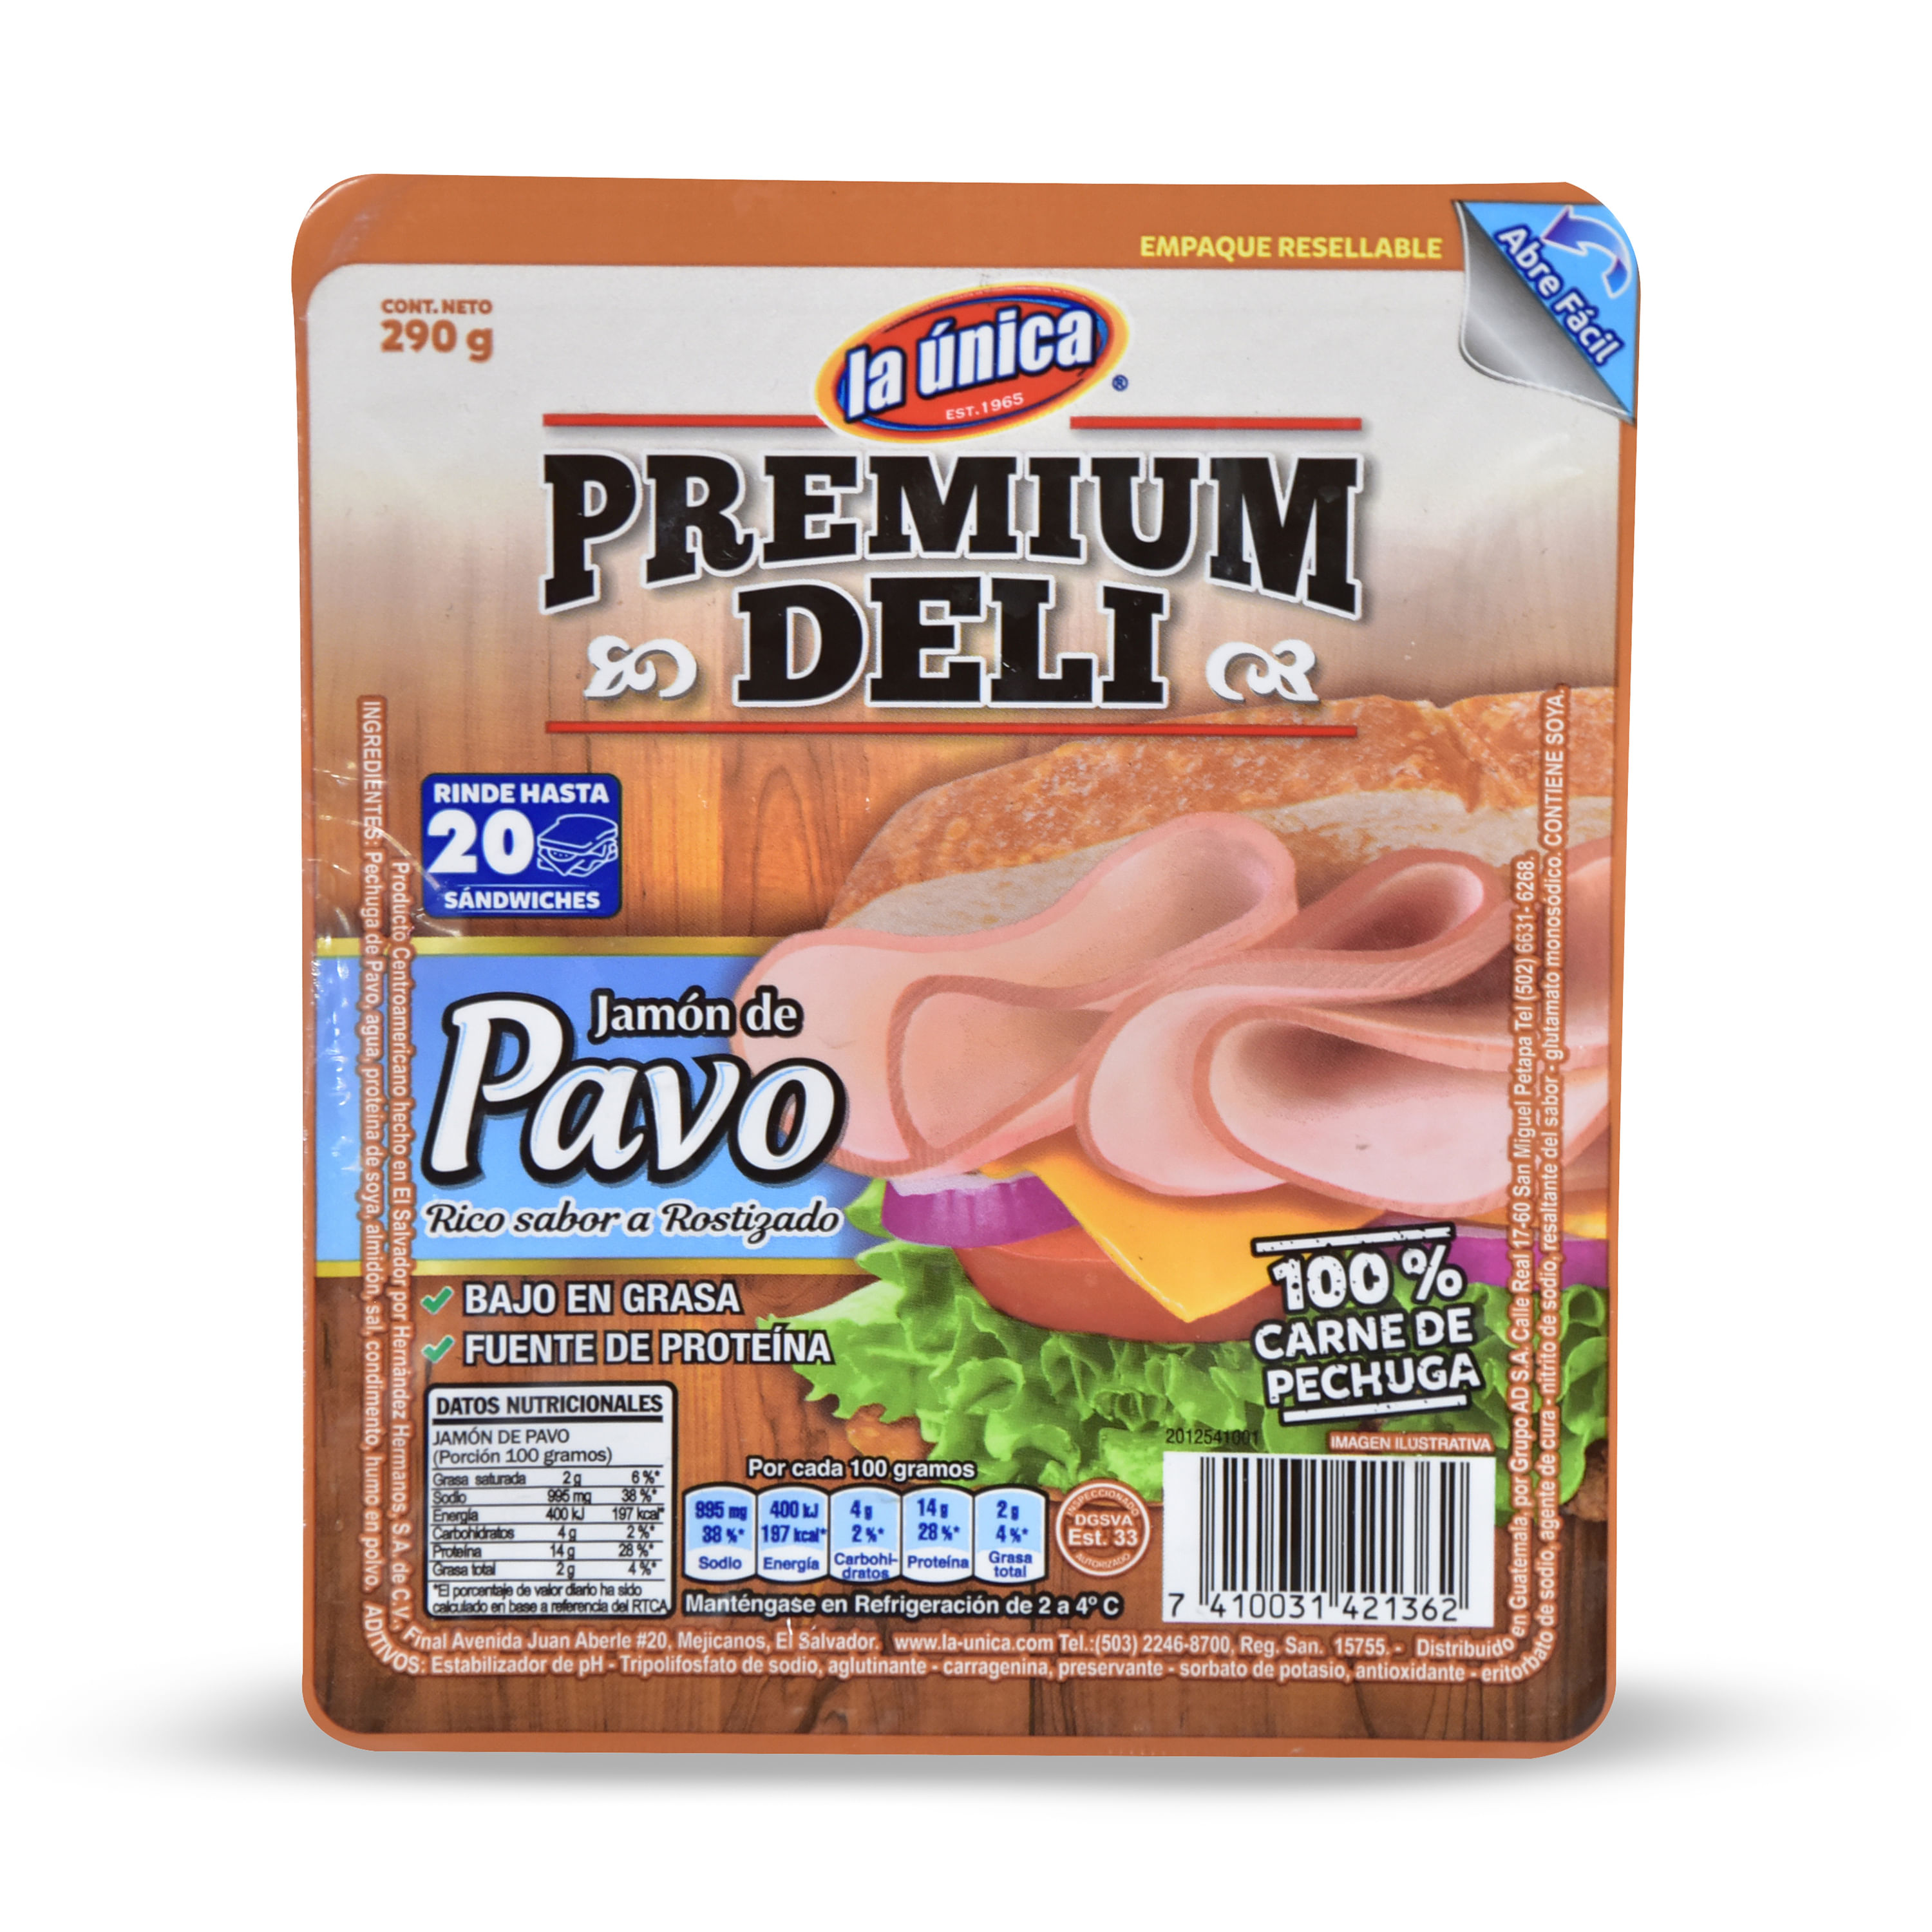 Jamon-La-nica-Pavo-Premium-Deli-290Gr-1-8194